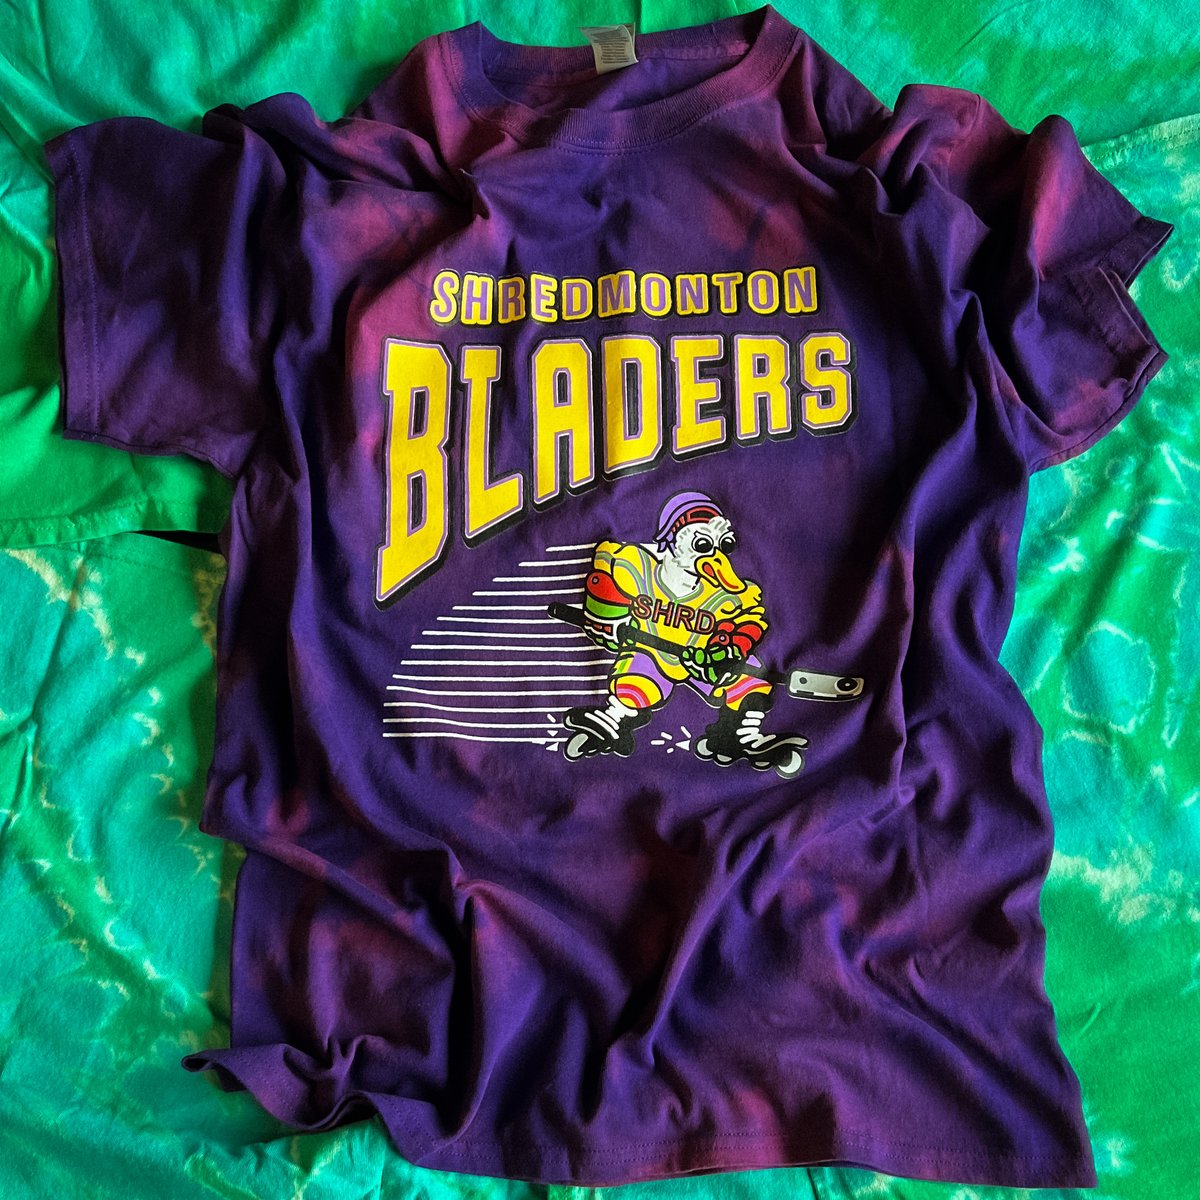 Image of Shredmonton Mighty Bladers - Custom Reverse Tie Die T-Shirt 